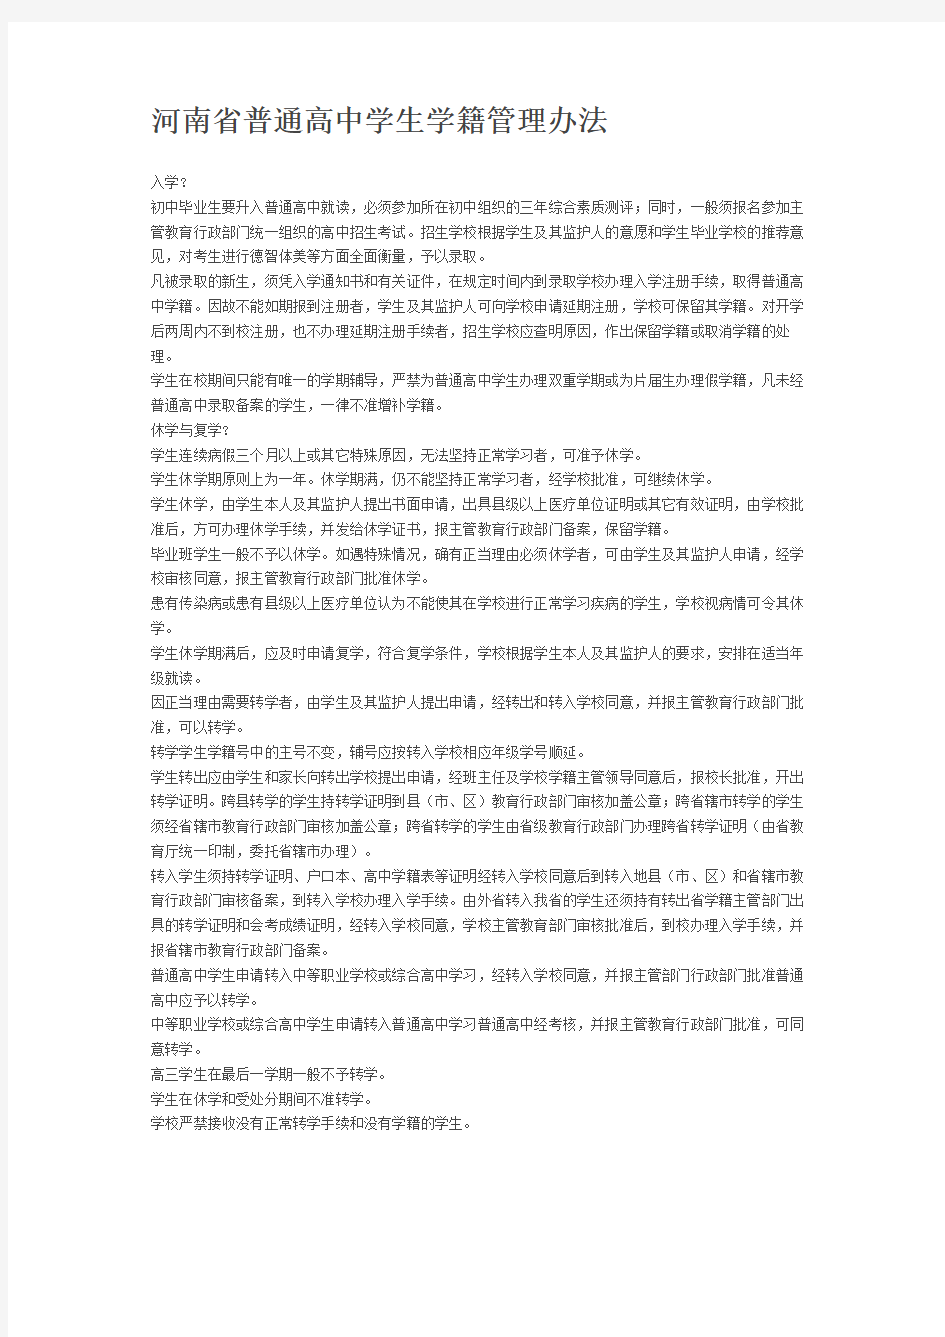 河南省普通高中学生学籍管理规定